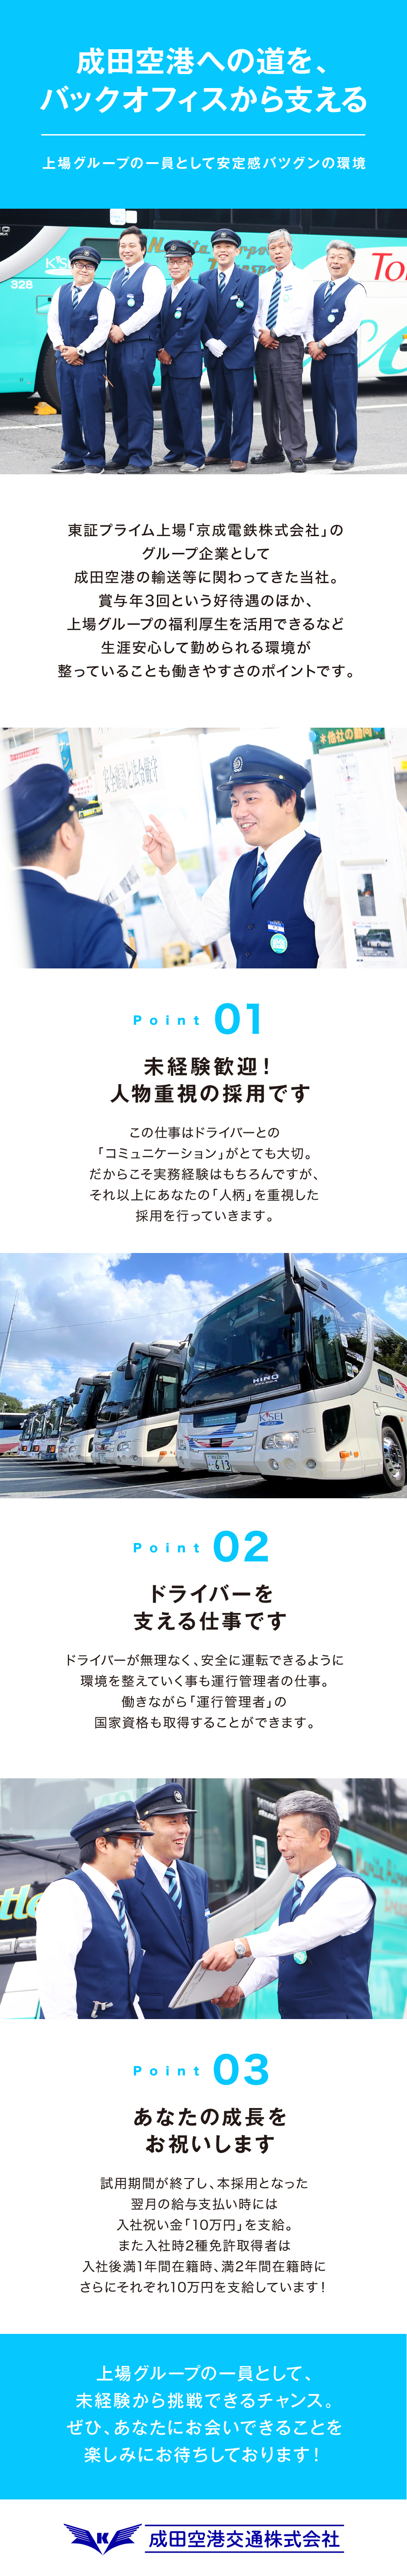 成田空港交通株式会社からのメッセージ